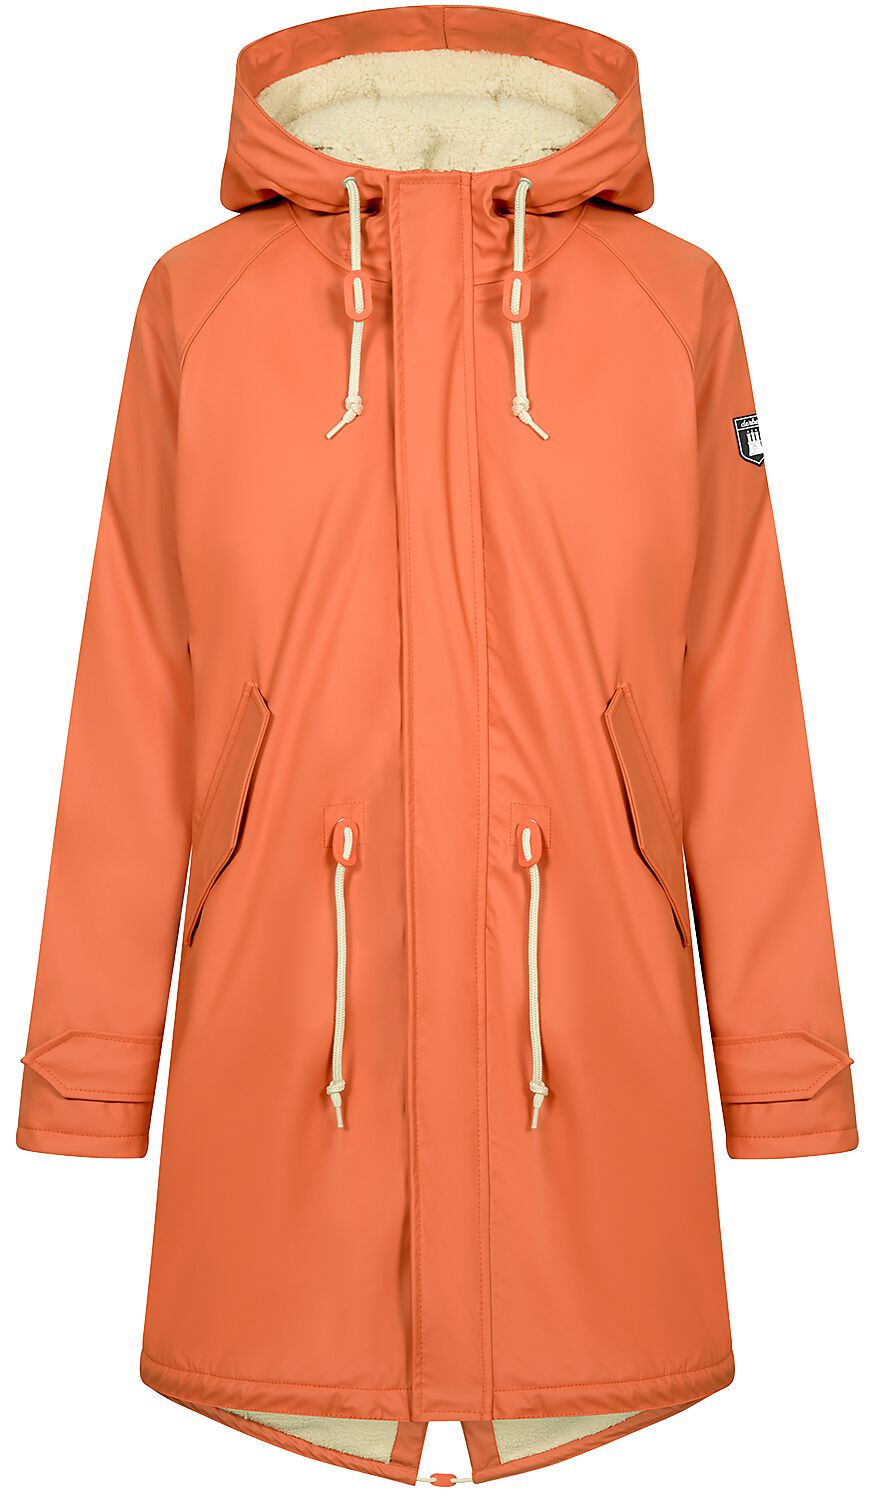 Manteau d'hiver de Derbe Hamburg - Friese Tidaholm - S à 3XL - pour Femme - orange/blanc